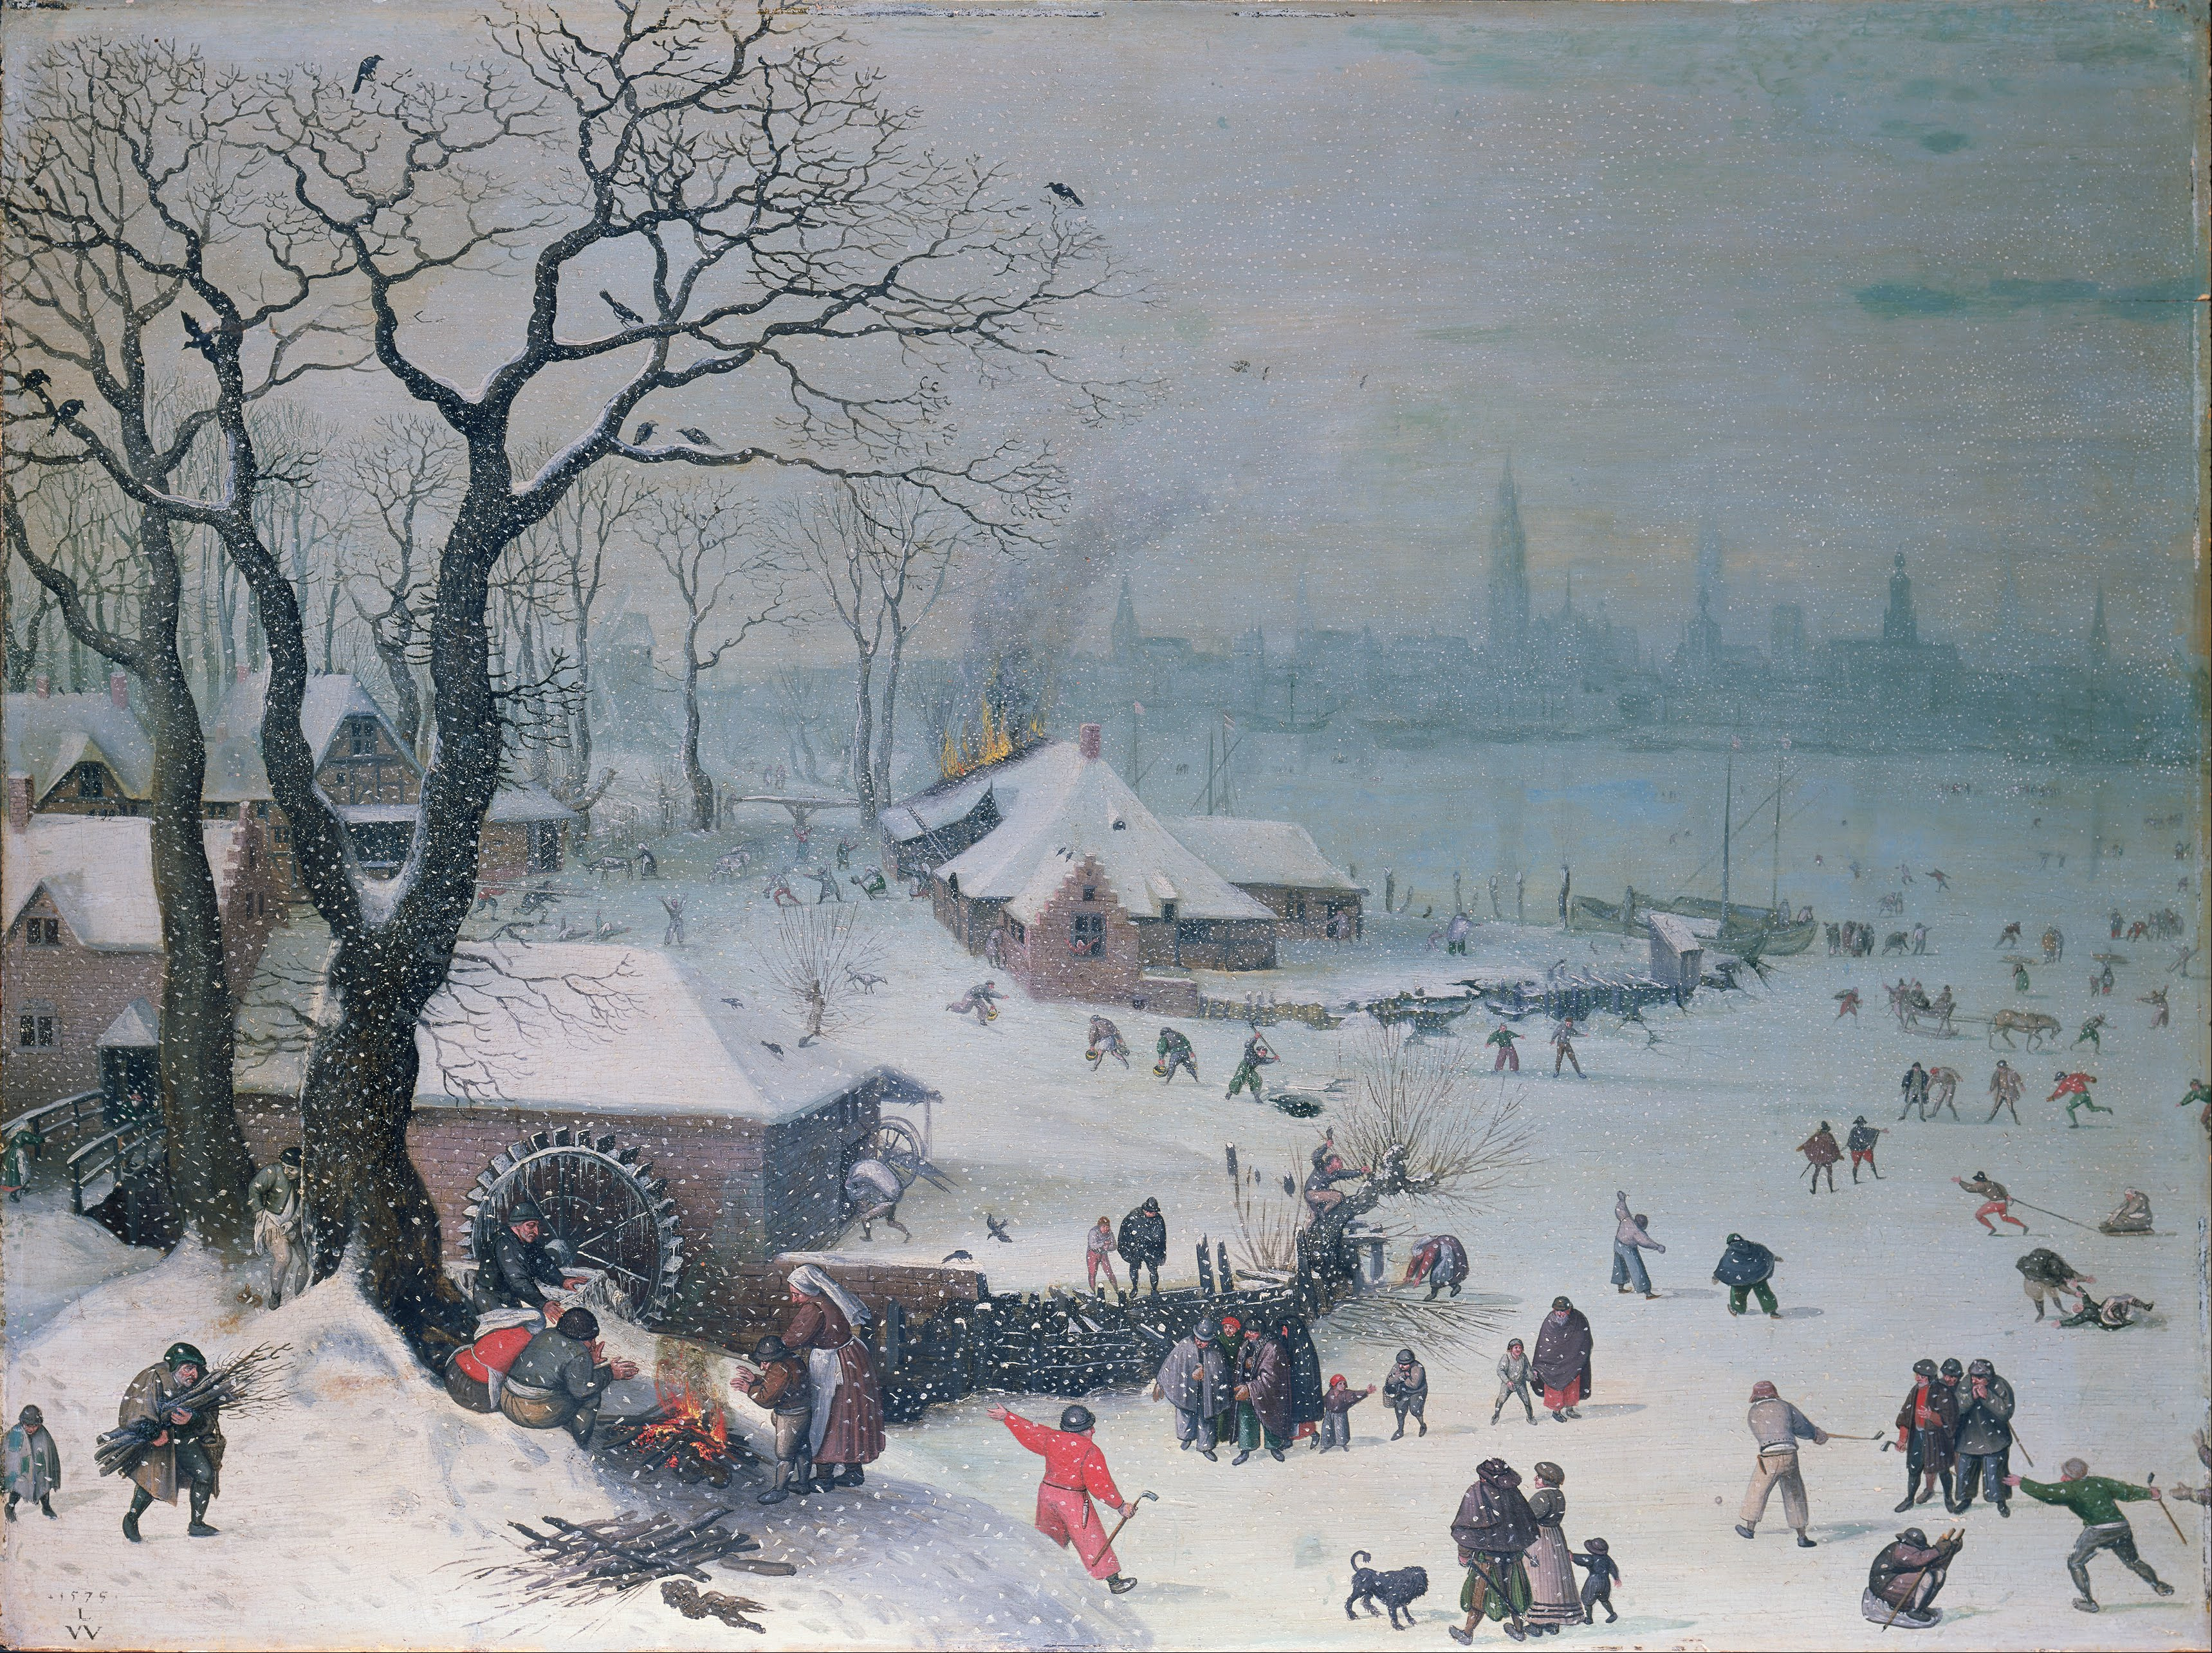 アントワープ近郊の雪降る冬景色 by Lucas van Valckenborch - 1575年 - 61 x 82 cm 